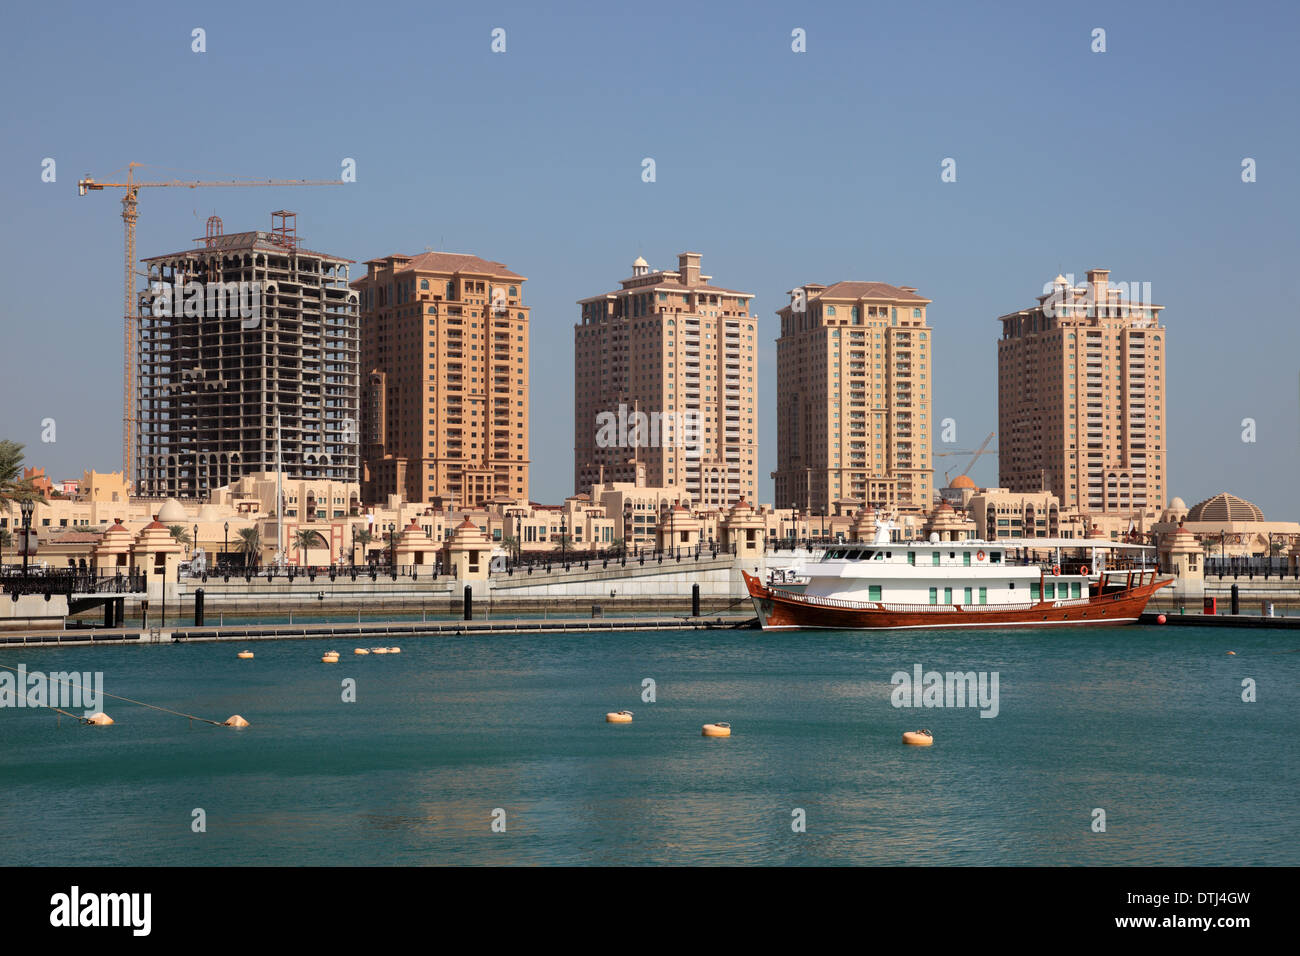 La construction de la marina de luxe à Porto Saoudite. Doha, au Qatar, au Moyen-Orient Banque D'Images